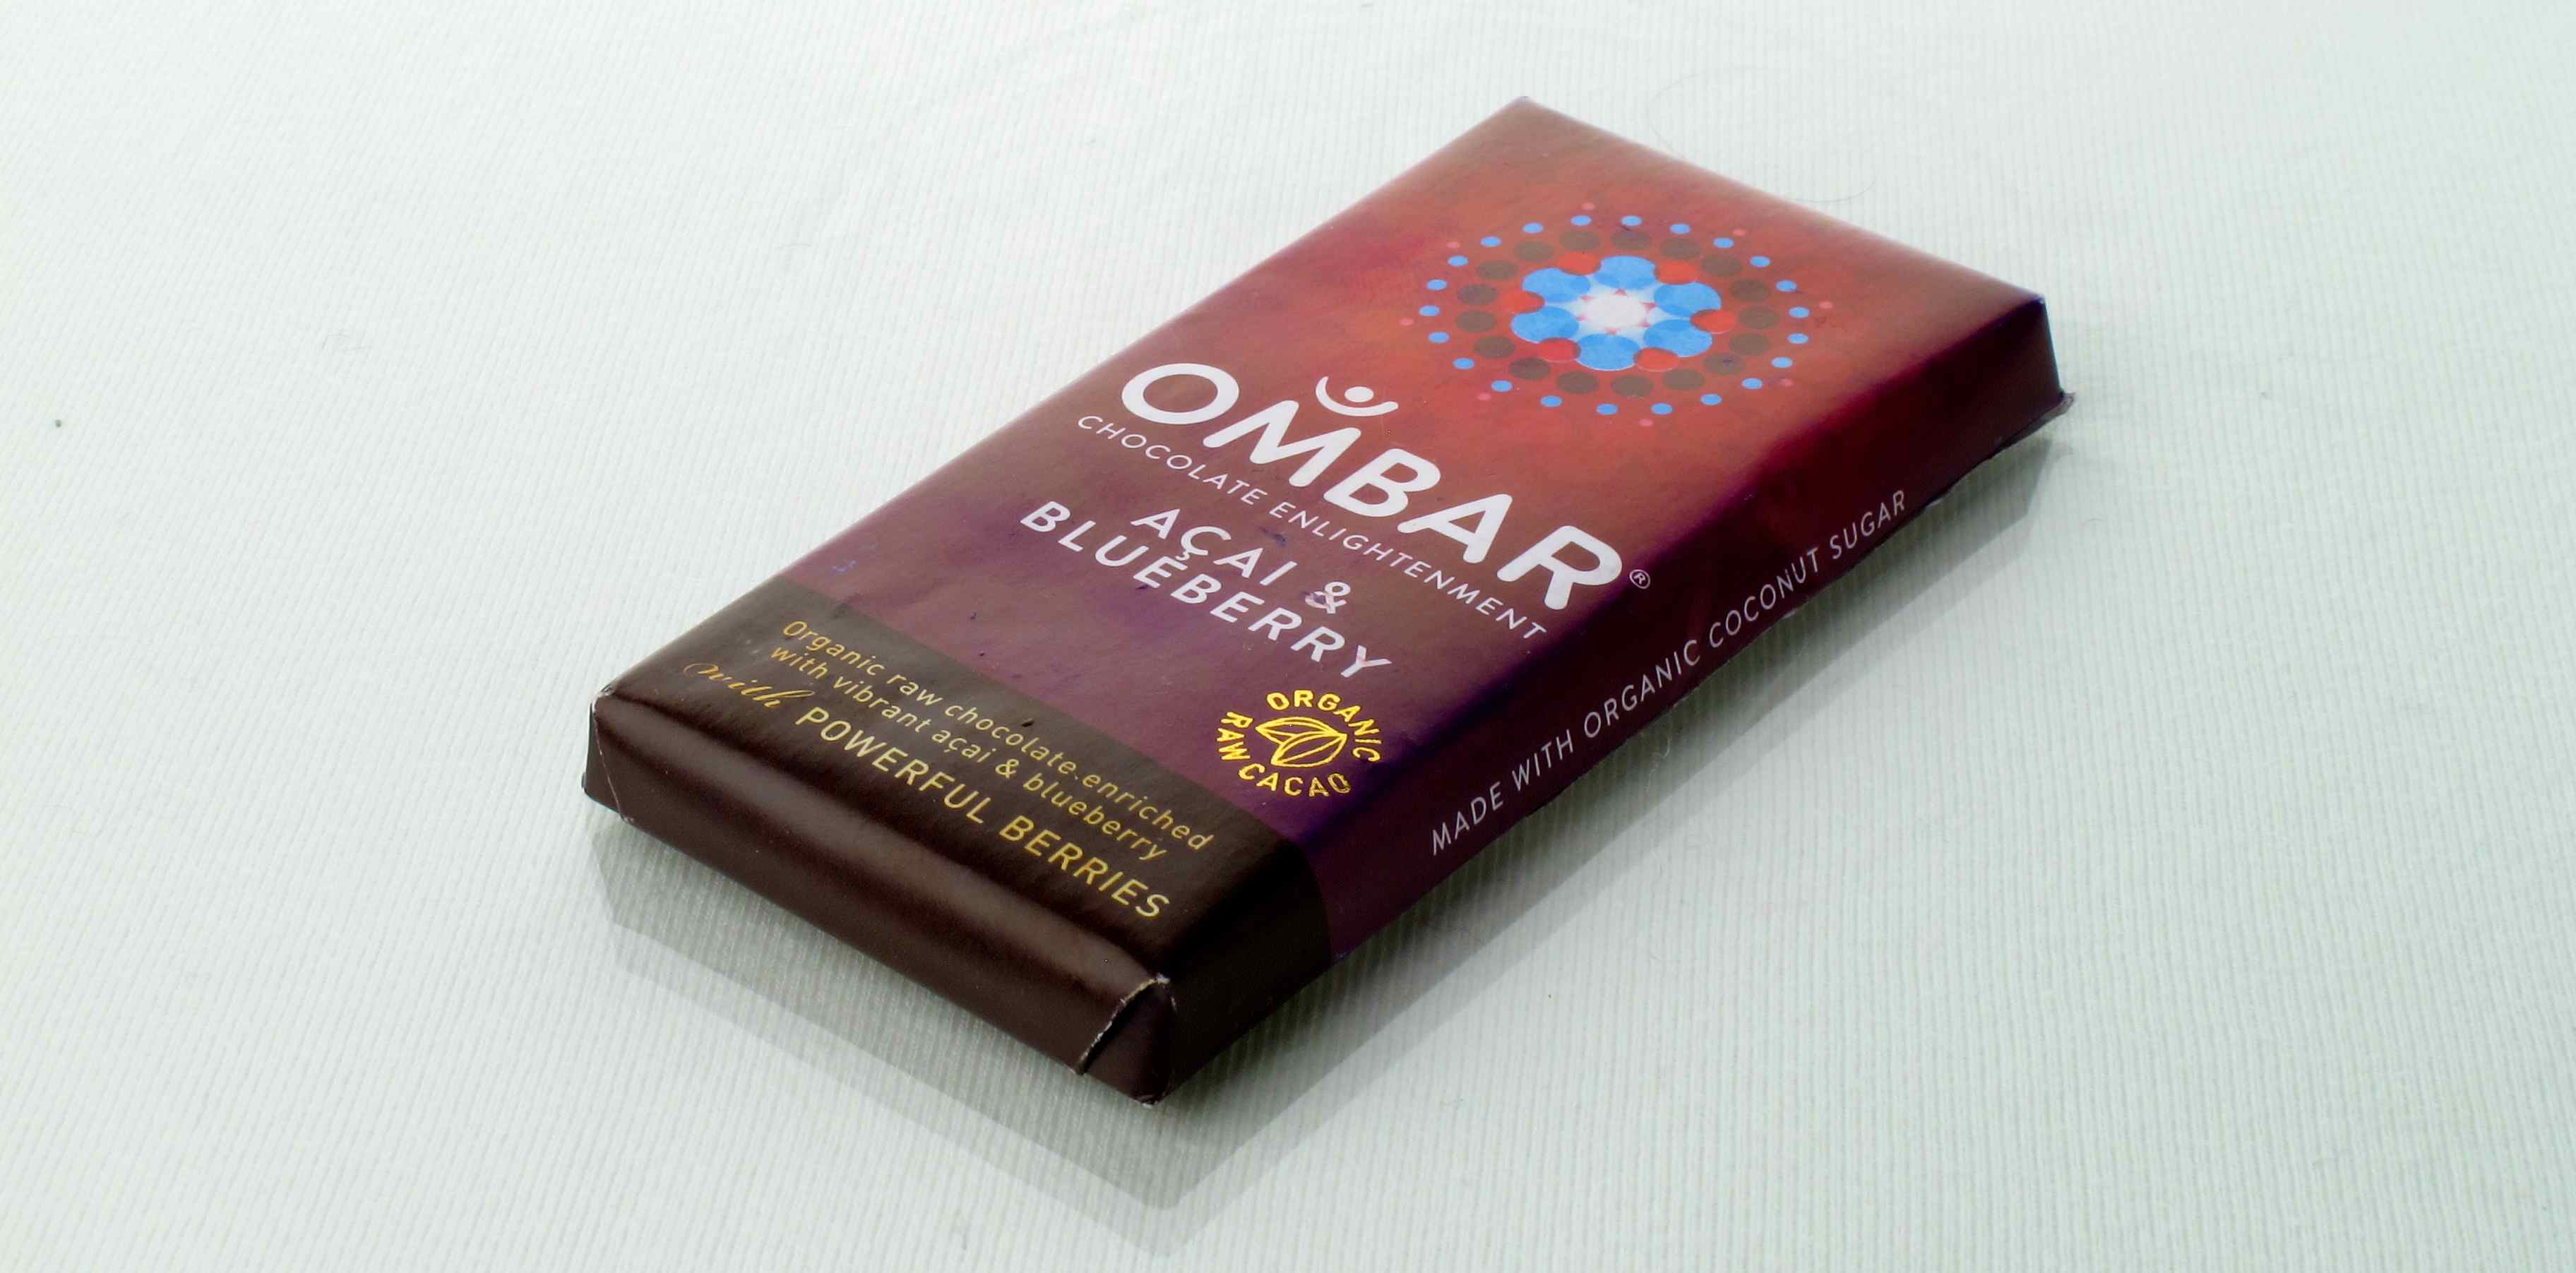 Ombar chocolate acai